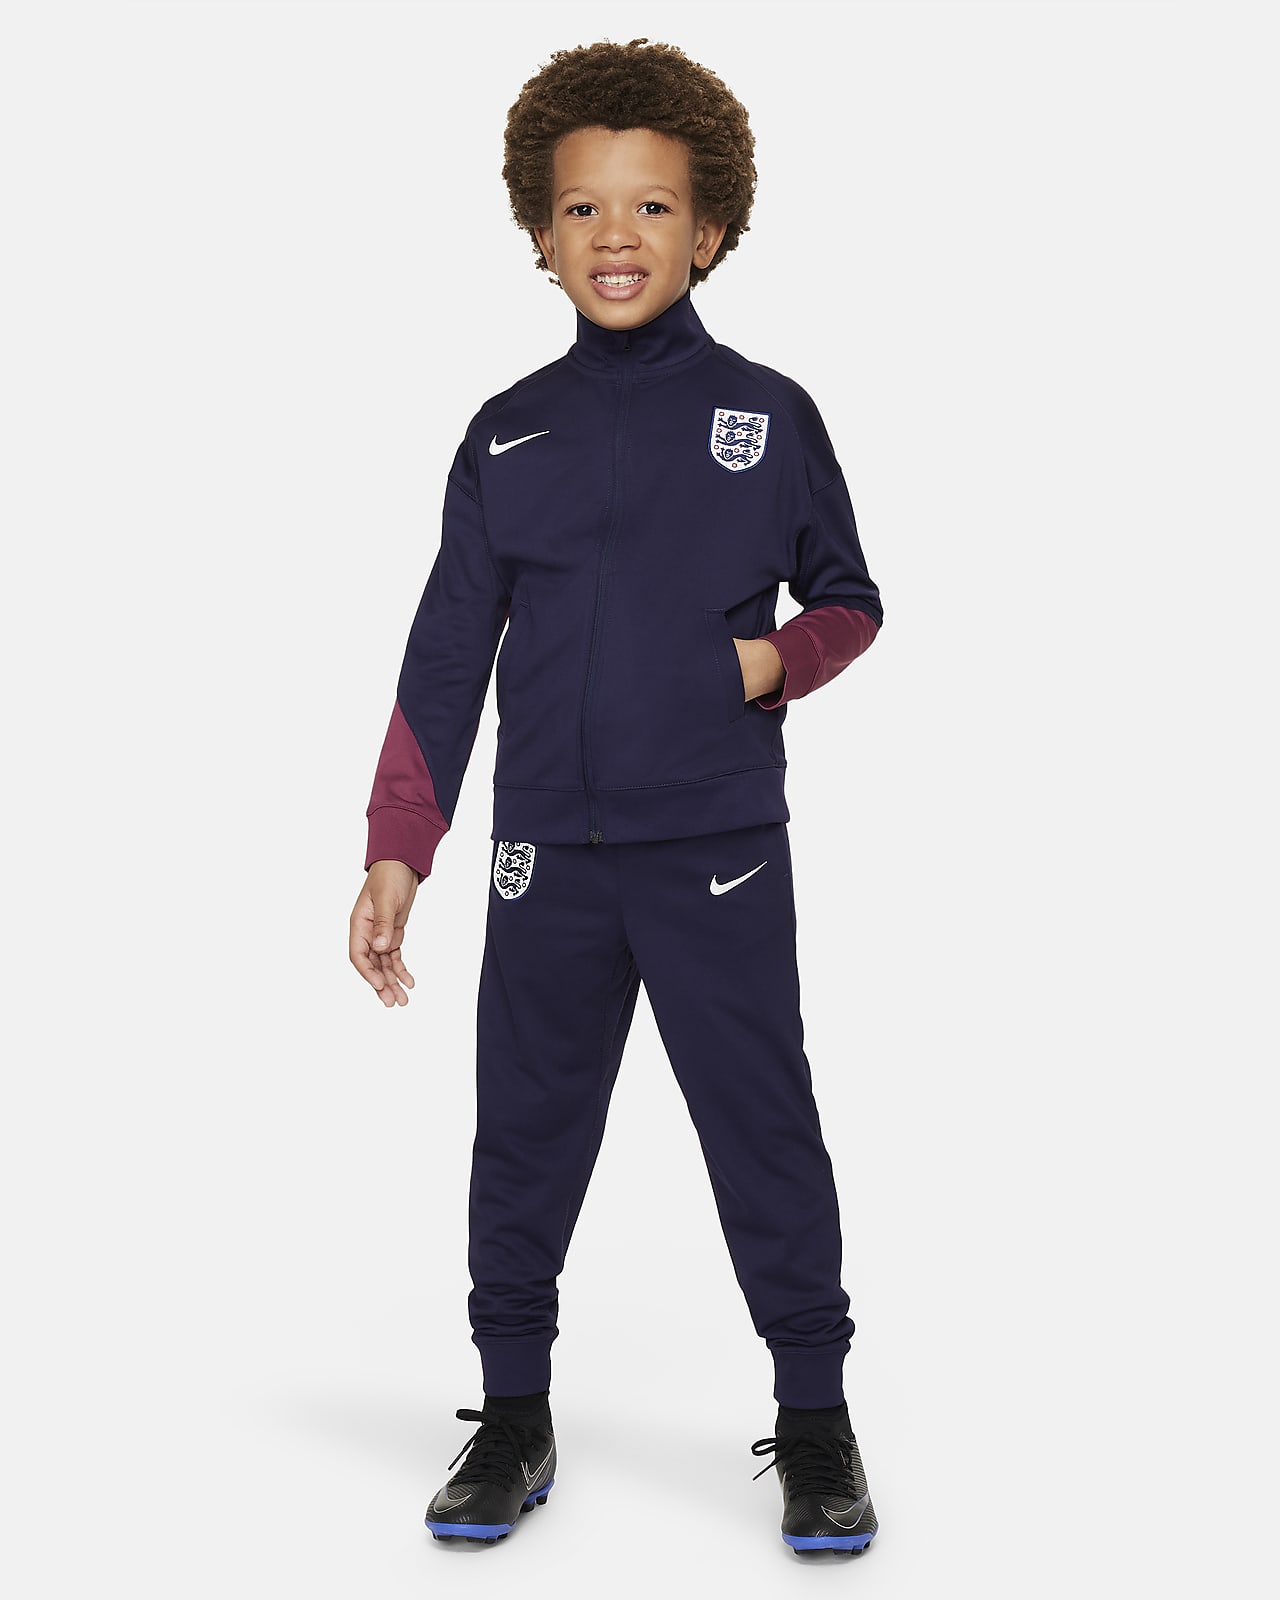 Pleteninová fotbalová sportovní souprava Nike Dri-FIT Anglie Strike pro menší děti